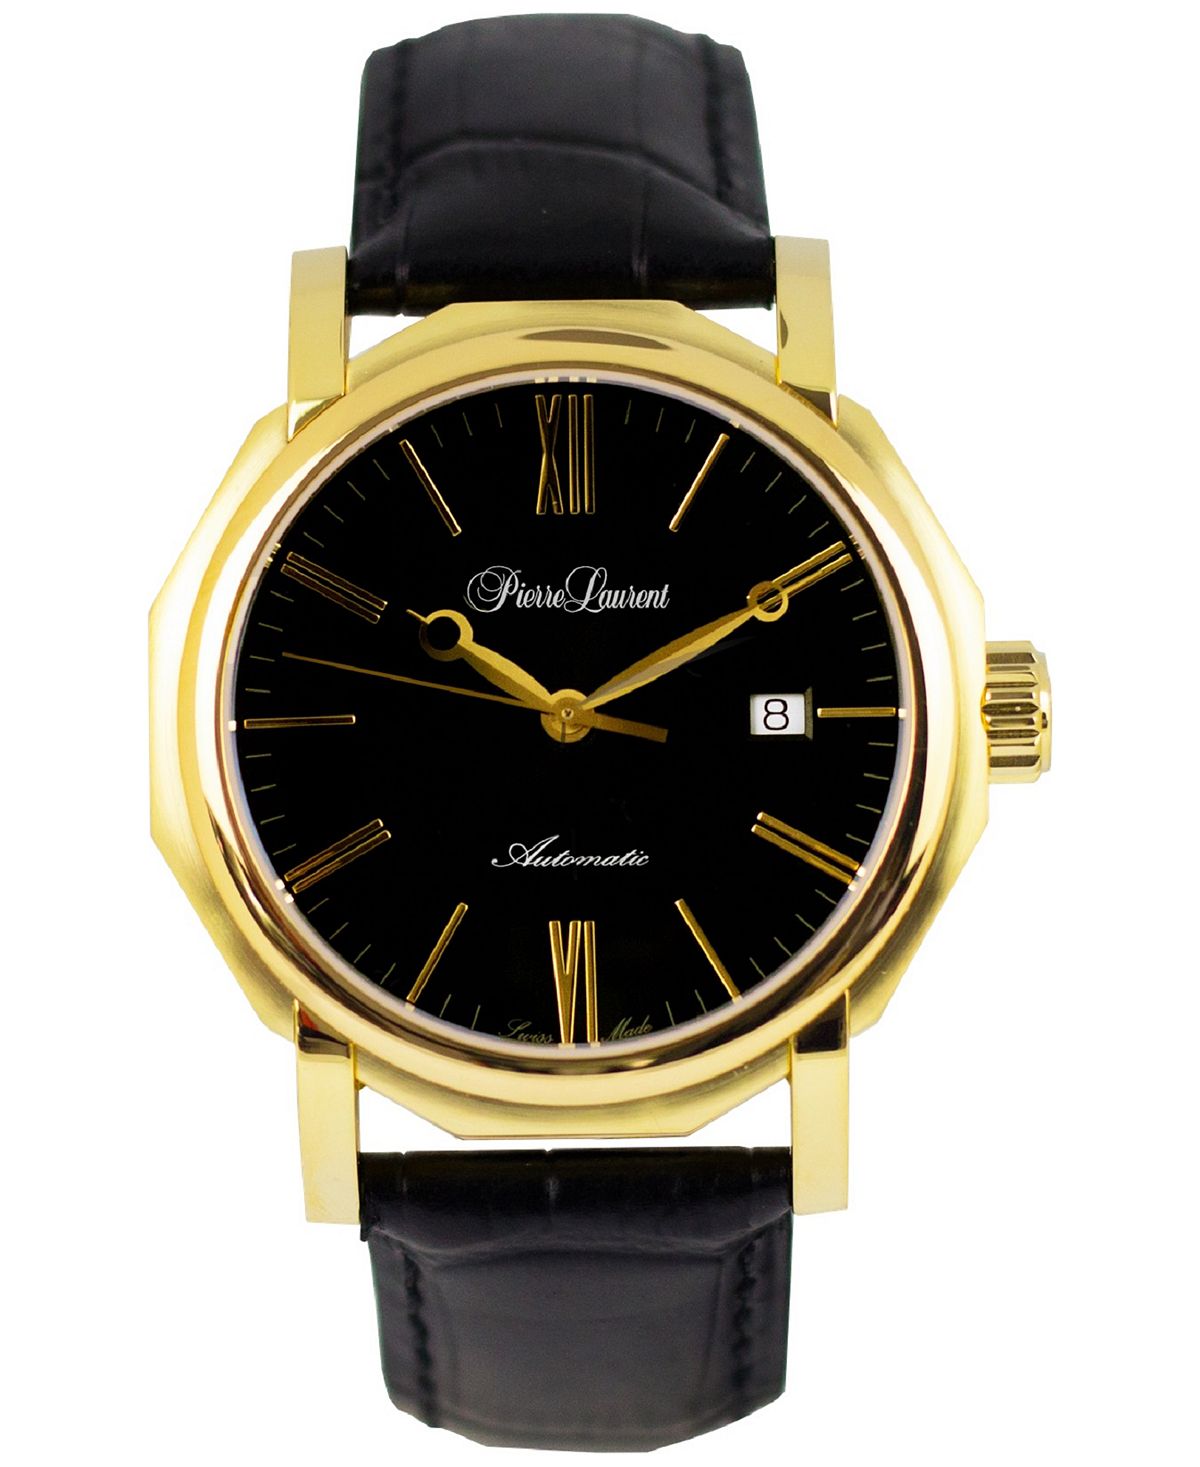 Мужские швейцарские автоматические семейные часы с черным кожаным ремешком, 46 мм Pierre Laurent gold plated 10mm bezel settings pick your amount b21theof